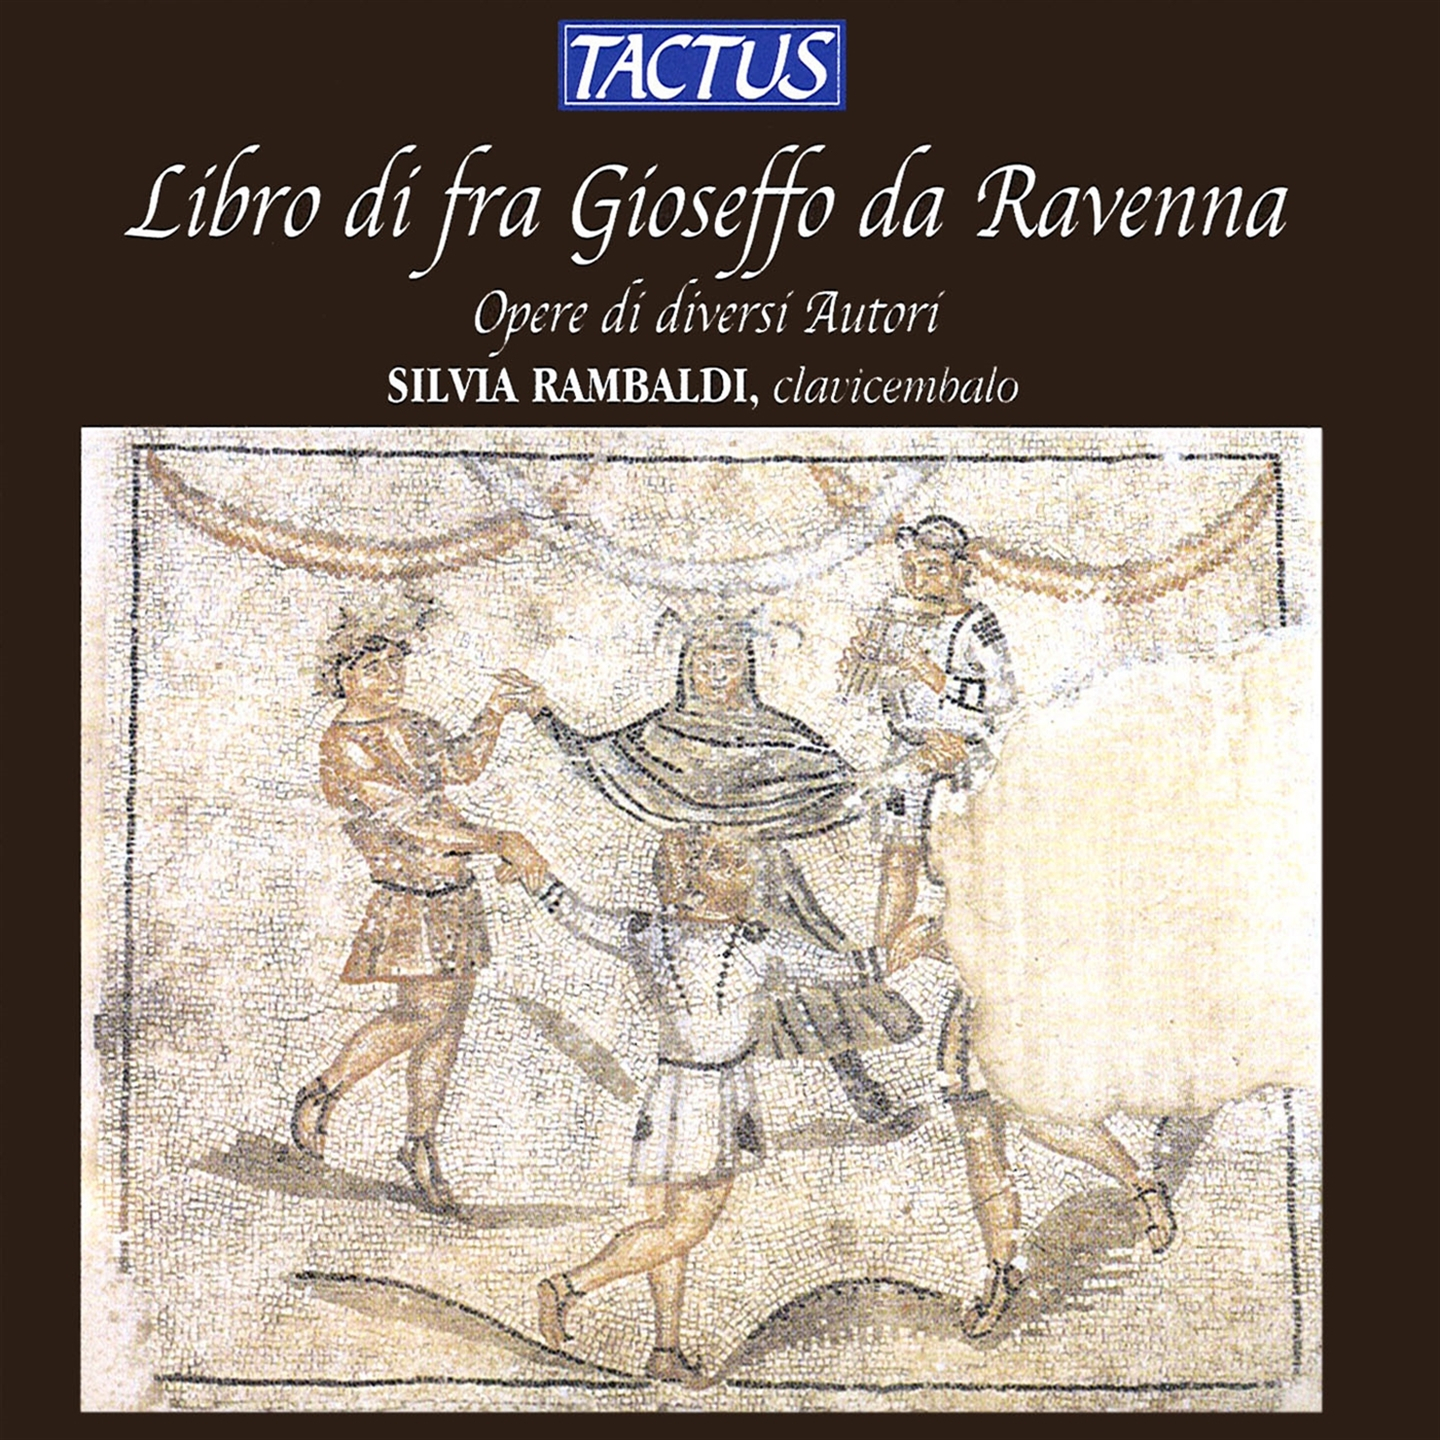 Rambaldi Silvia - Libro Di Fra Gioseffo Da Ra. - Picture 1 of 1